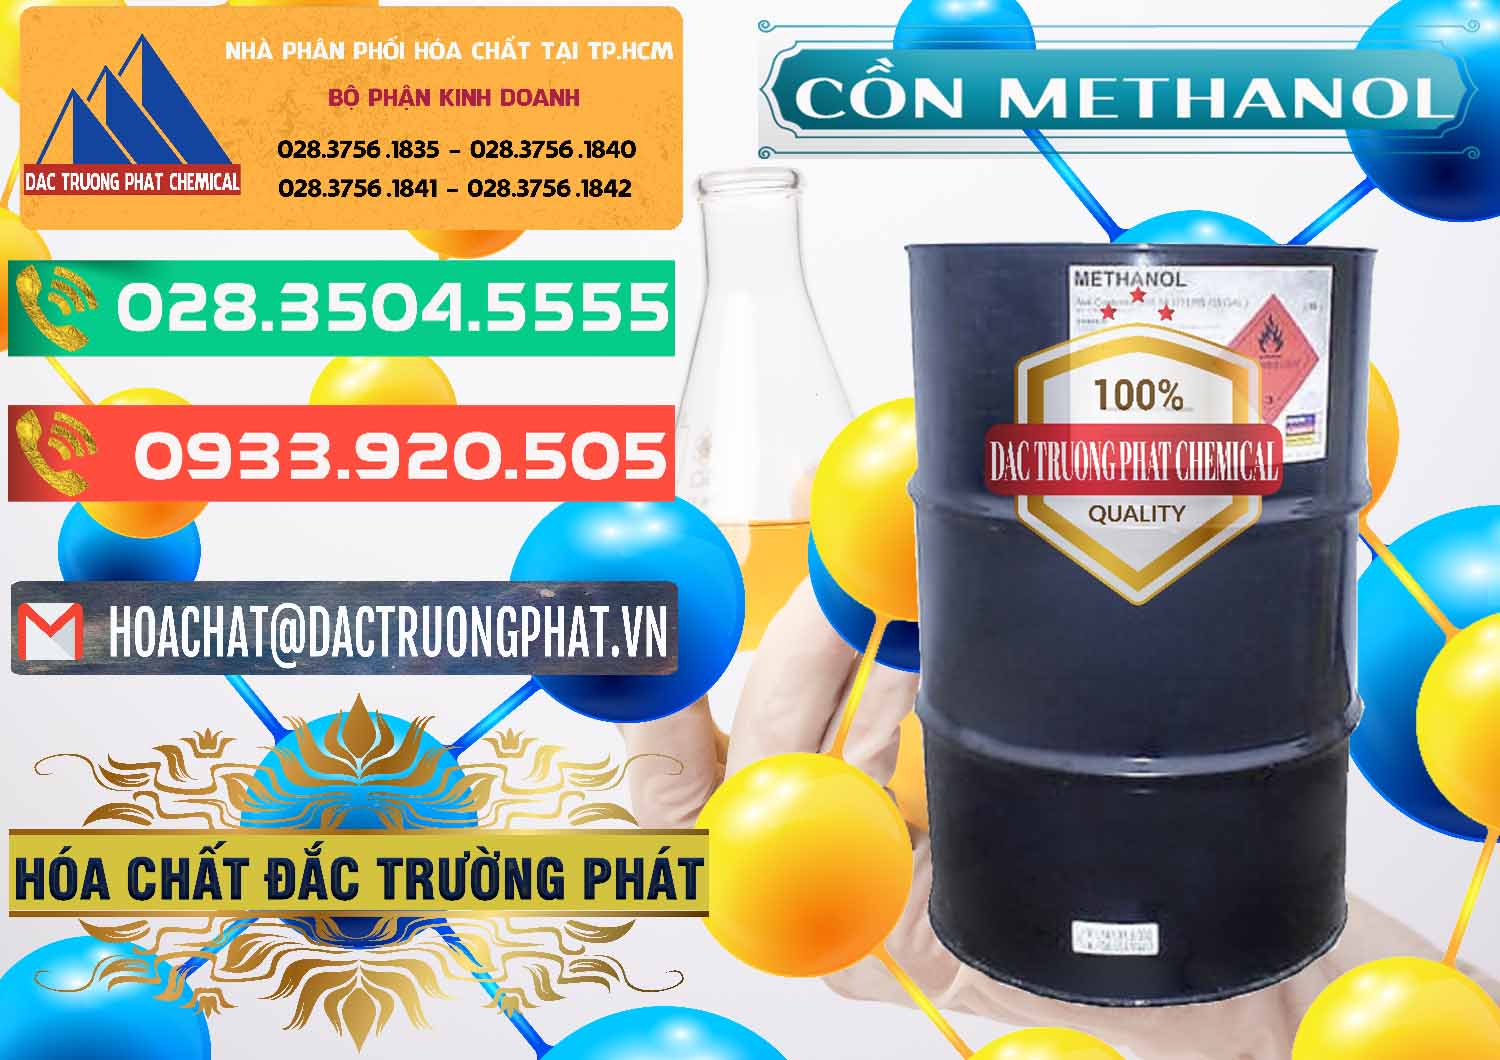 Nơi chuyên phân phối - bán Cồn Methanol - Methyl Alcohol Mã Lai Malaysia - 0331 - Cty cung cấp ( nhập khẩu ) hóa chất tại TP.HCM - congtyhoachat.com.vn